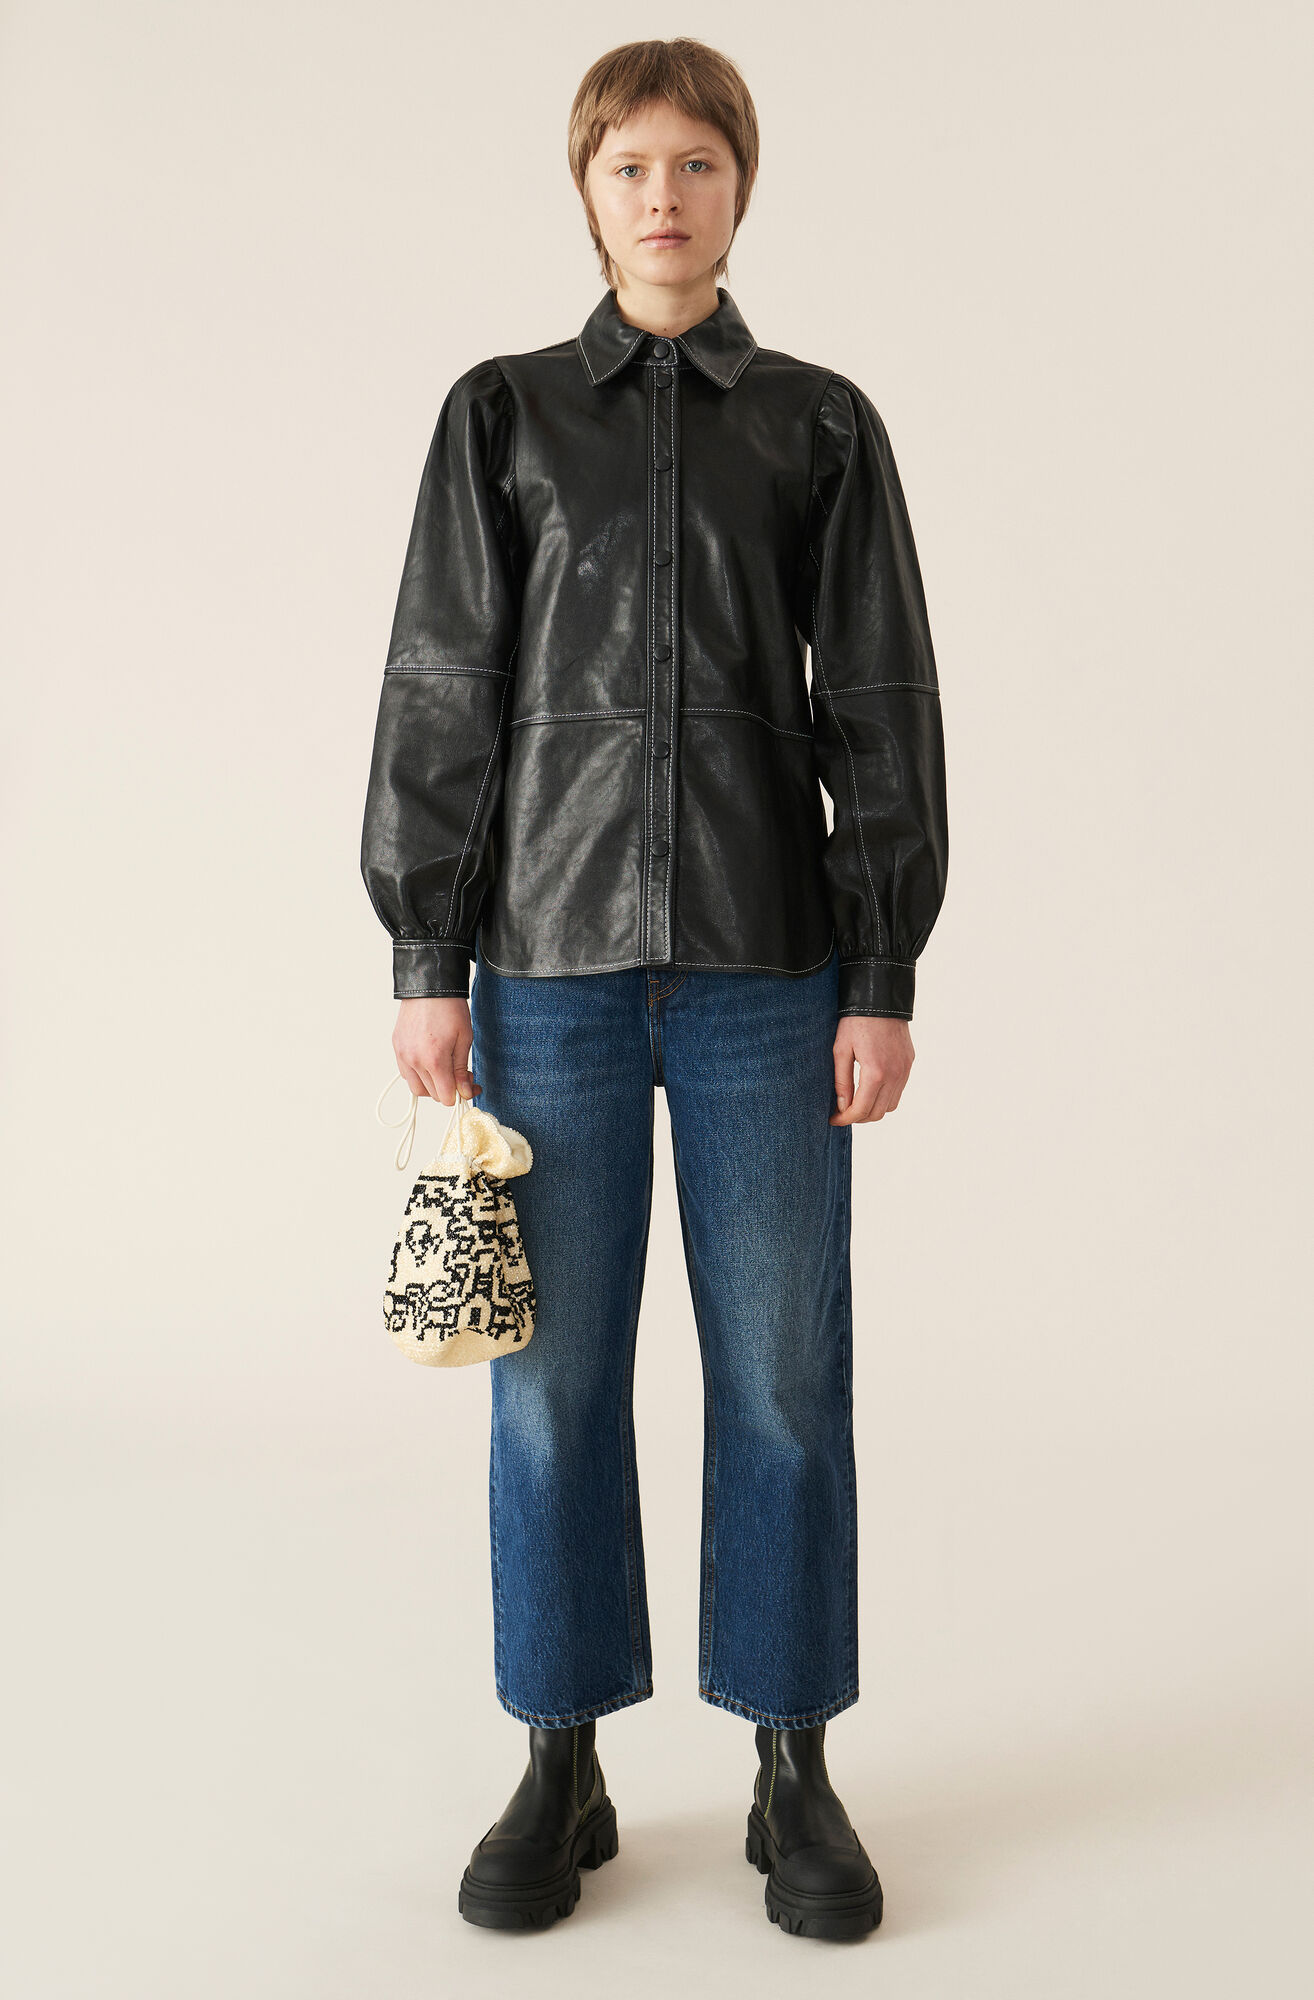 Lamb Leather Skjorte, in colour Black - 2 - GANNI